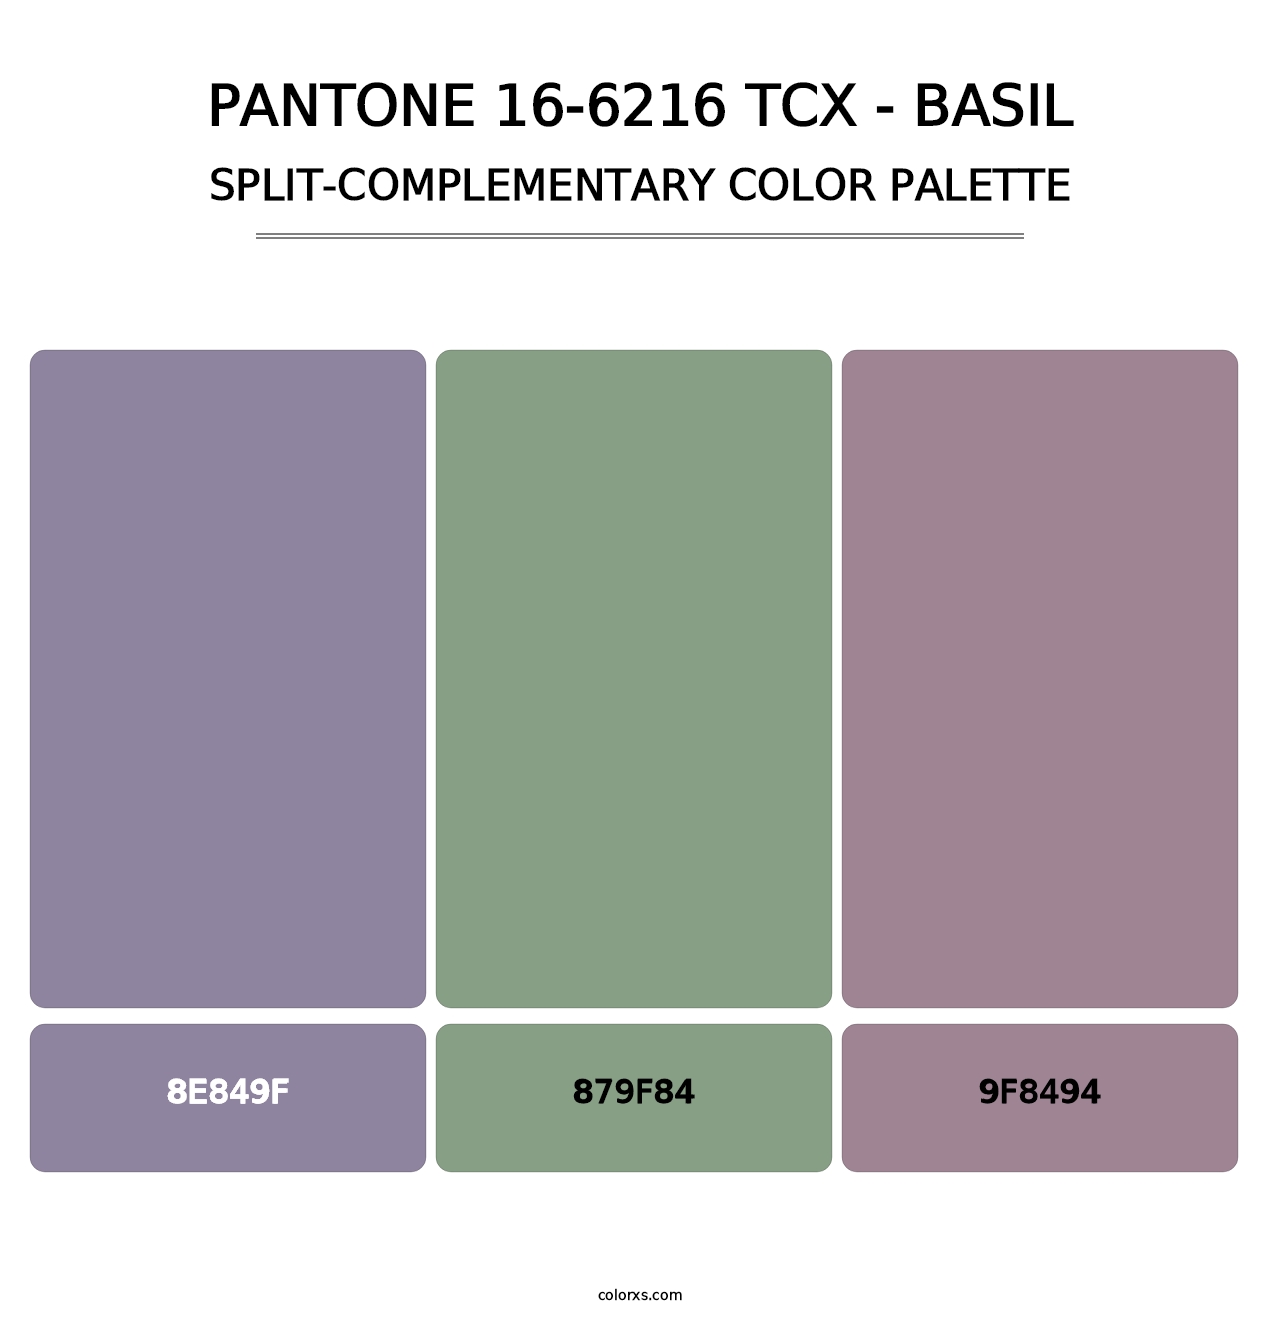 PANTONE 16-6216 TCX - Basil - Split-Complementary Color Palette